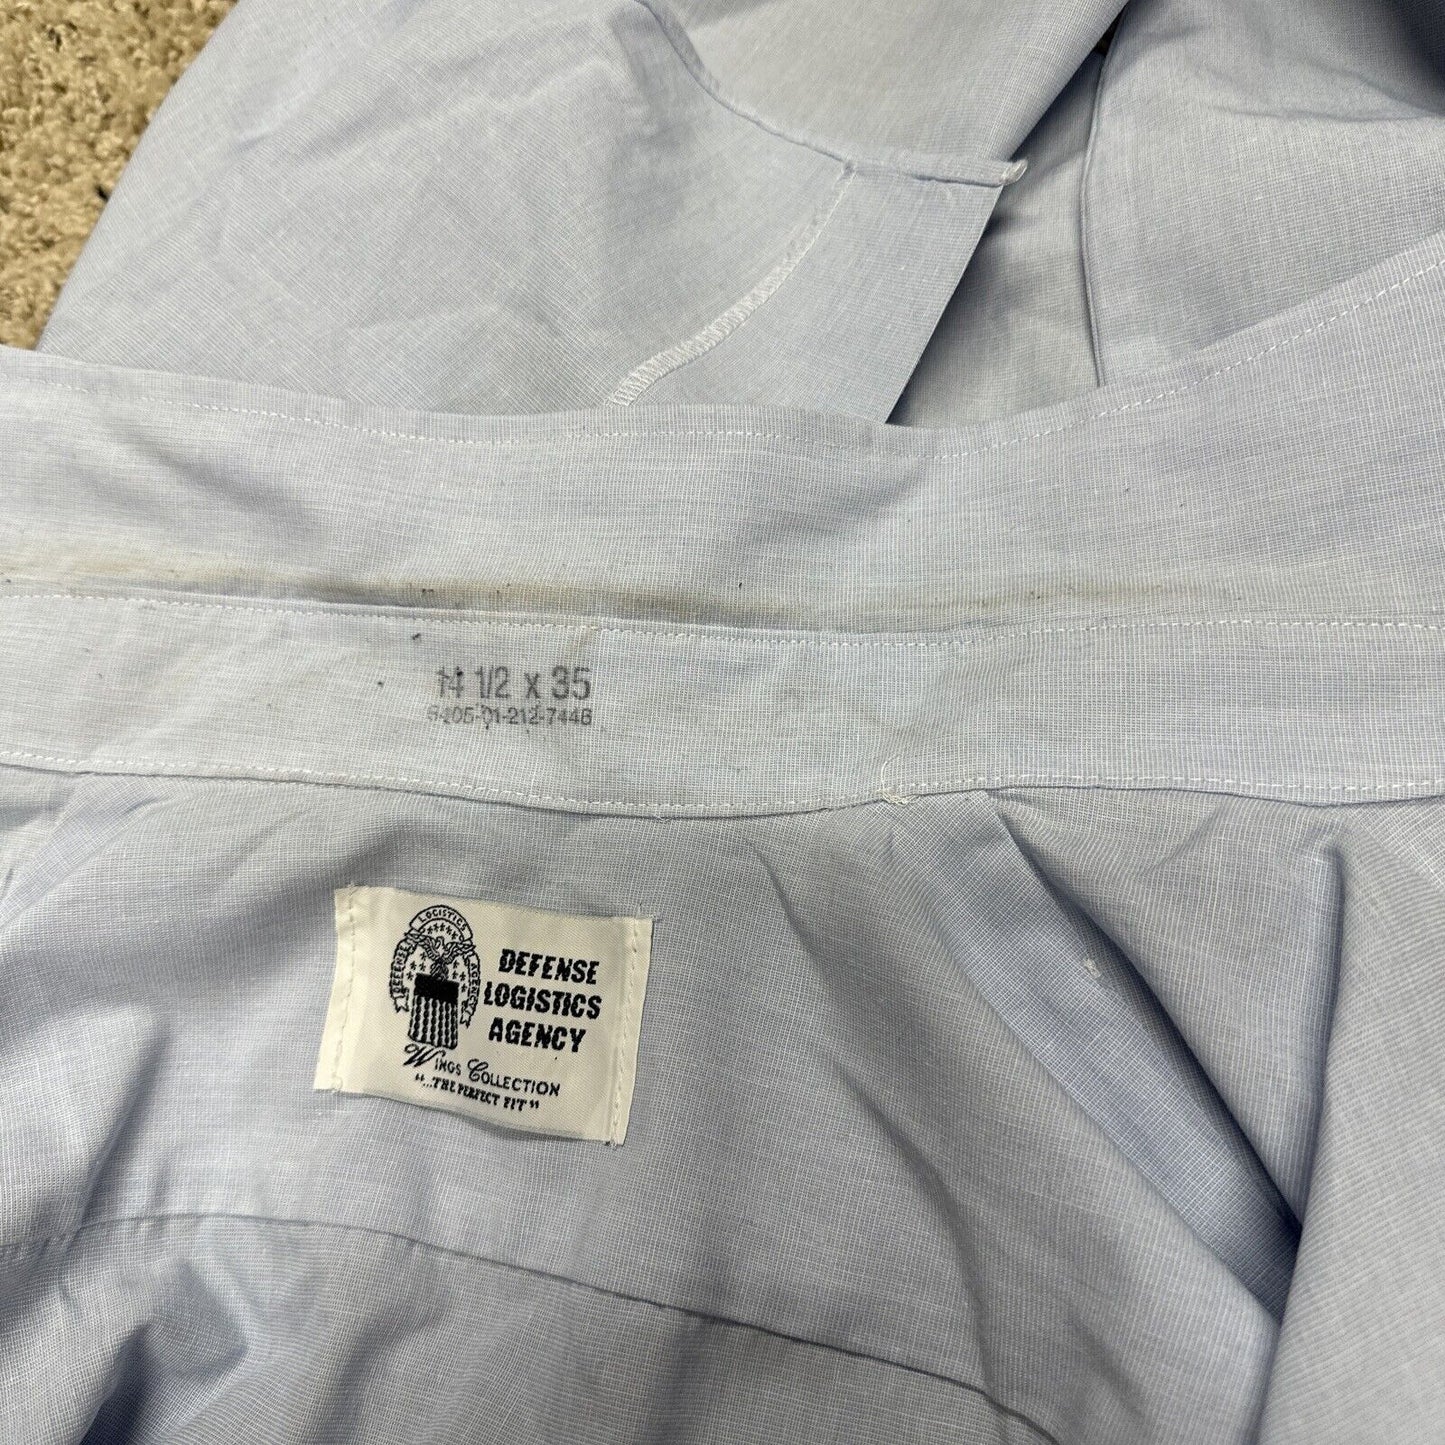 Men’s USAF USSF 14 1/2 X 35 Long Sleeve Dress Blues Shirt Button Up